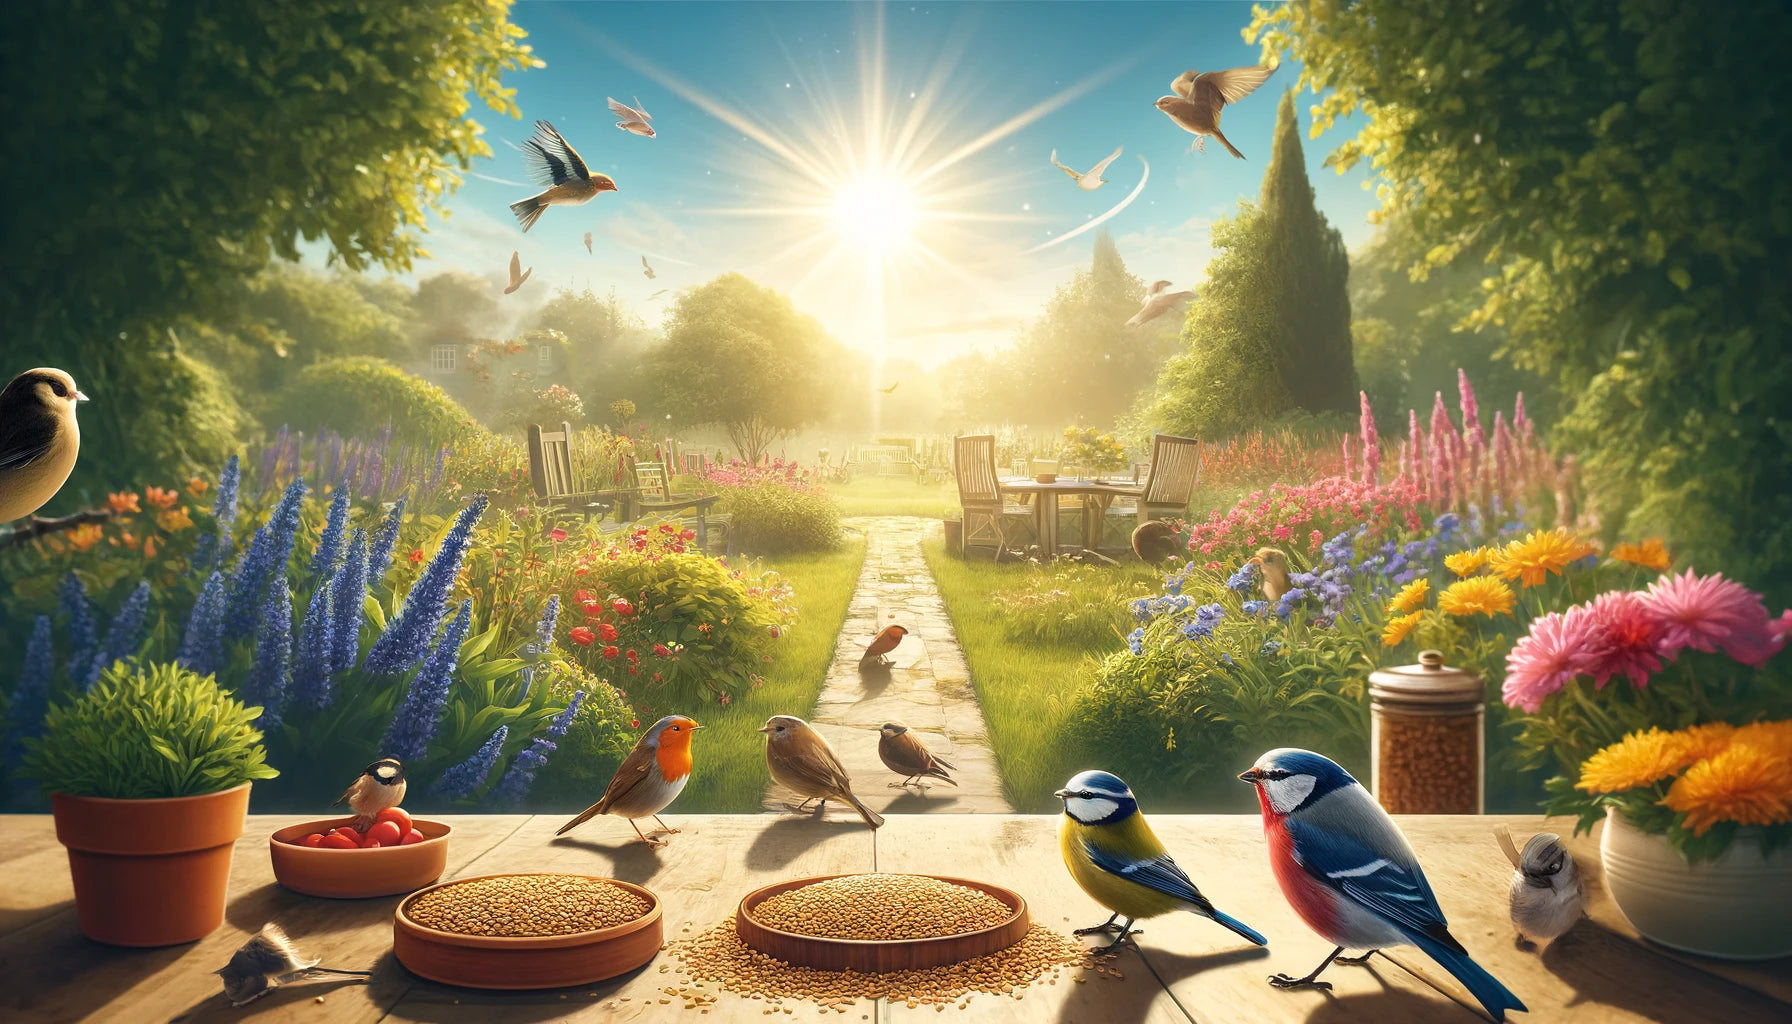 Birds in a sunny garden eating bird food